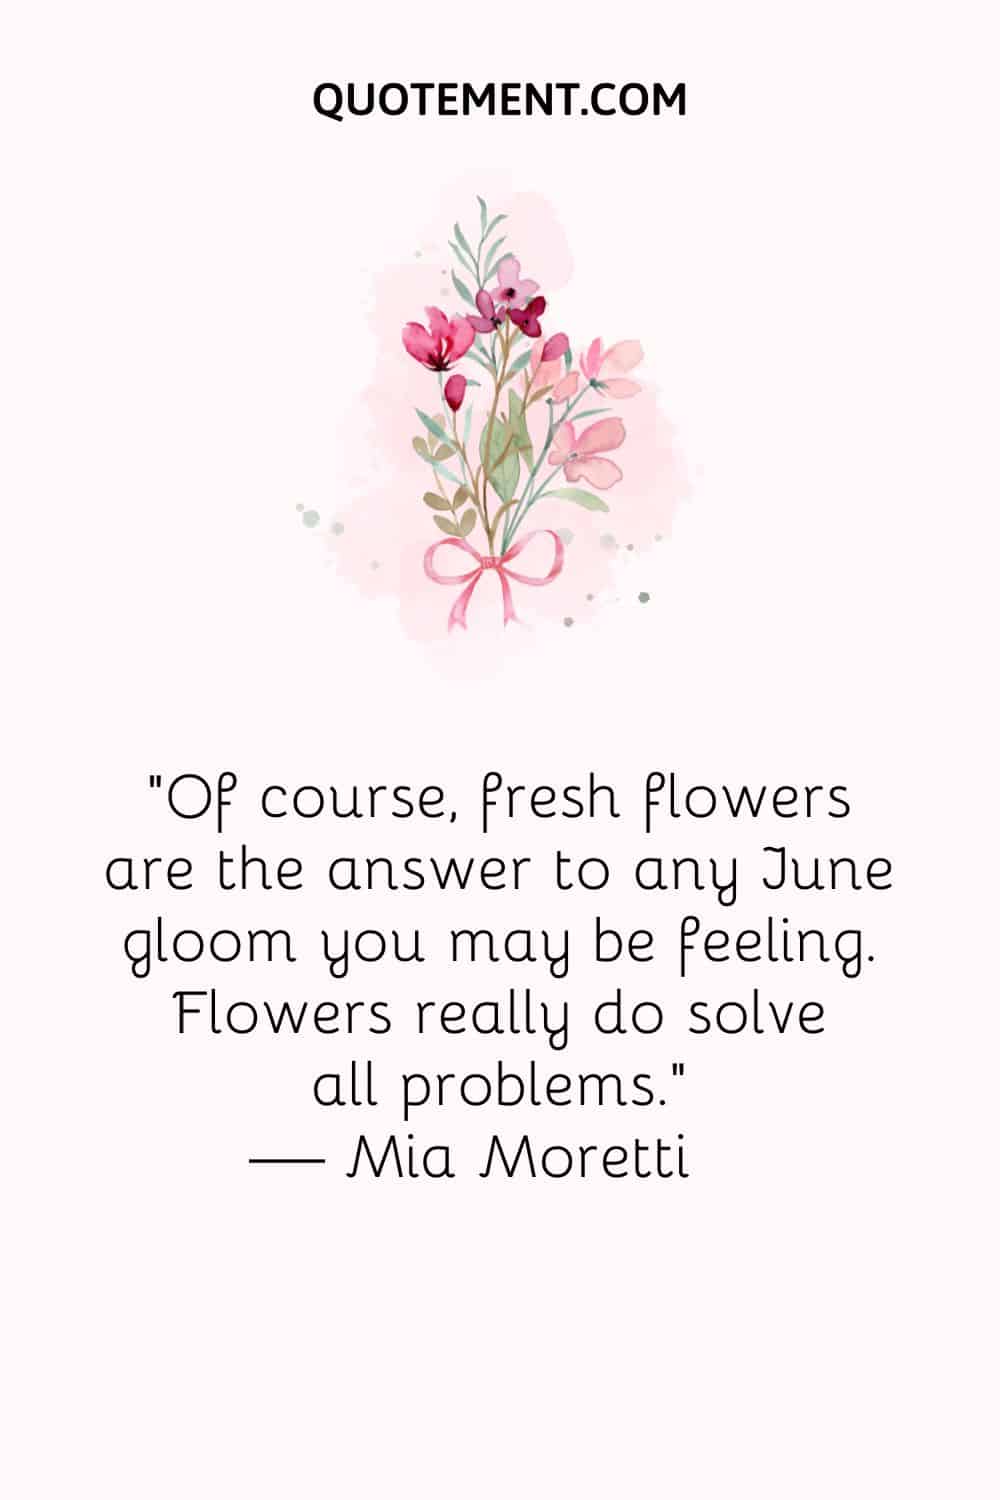 "Por supuesto, las flores frescas son la respuesta a cualquier melancolía de junio que pueda estar sintiendo. Las flores realmente resuelven todos los problemas". - Mia Moretti